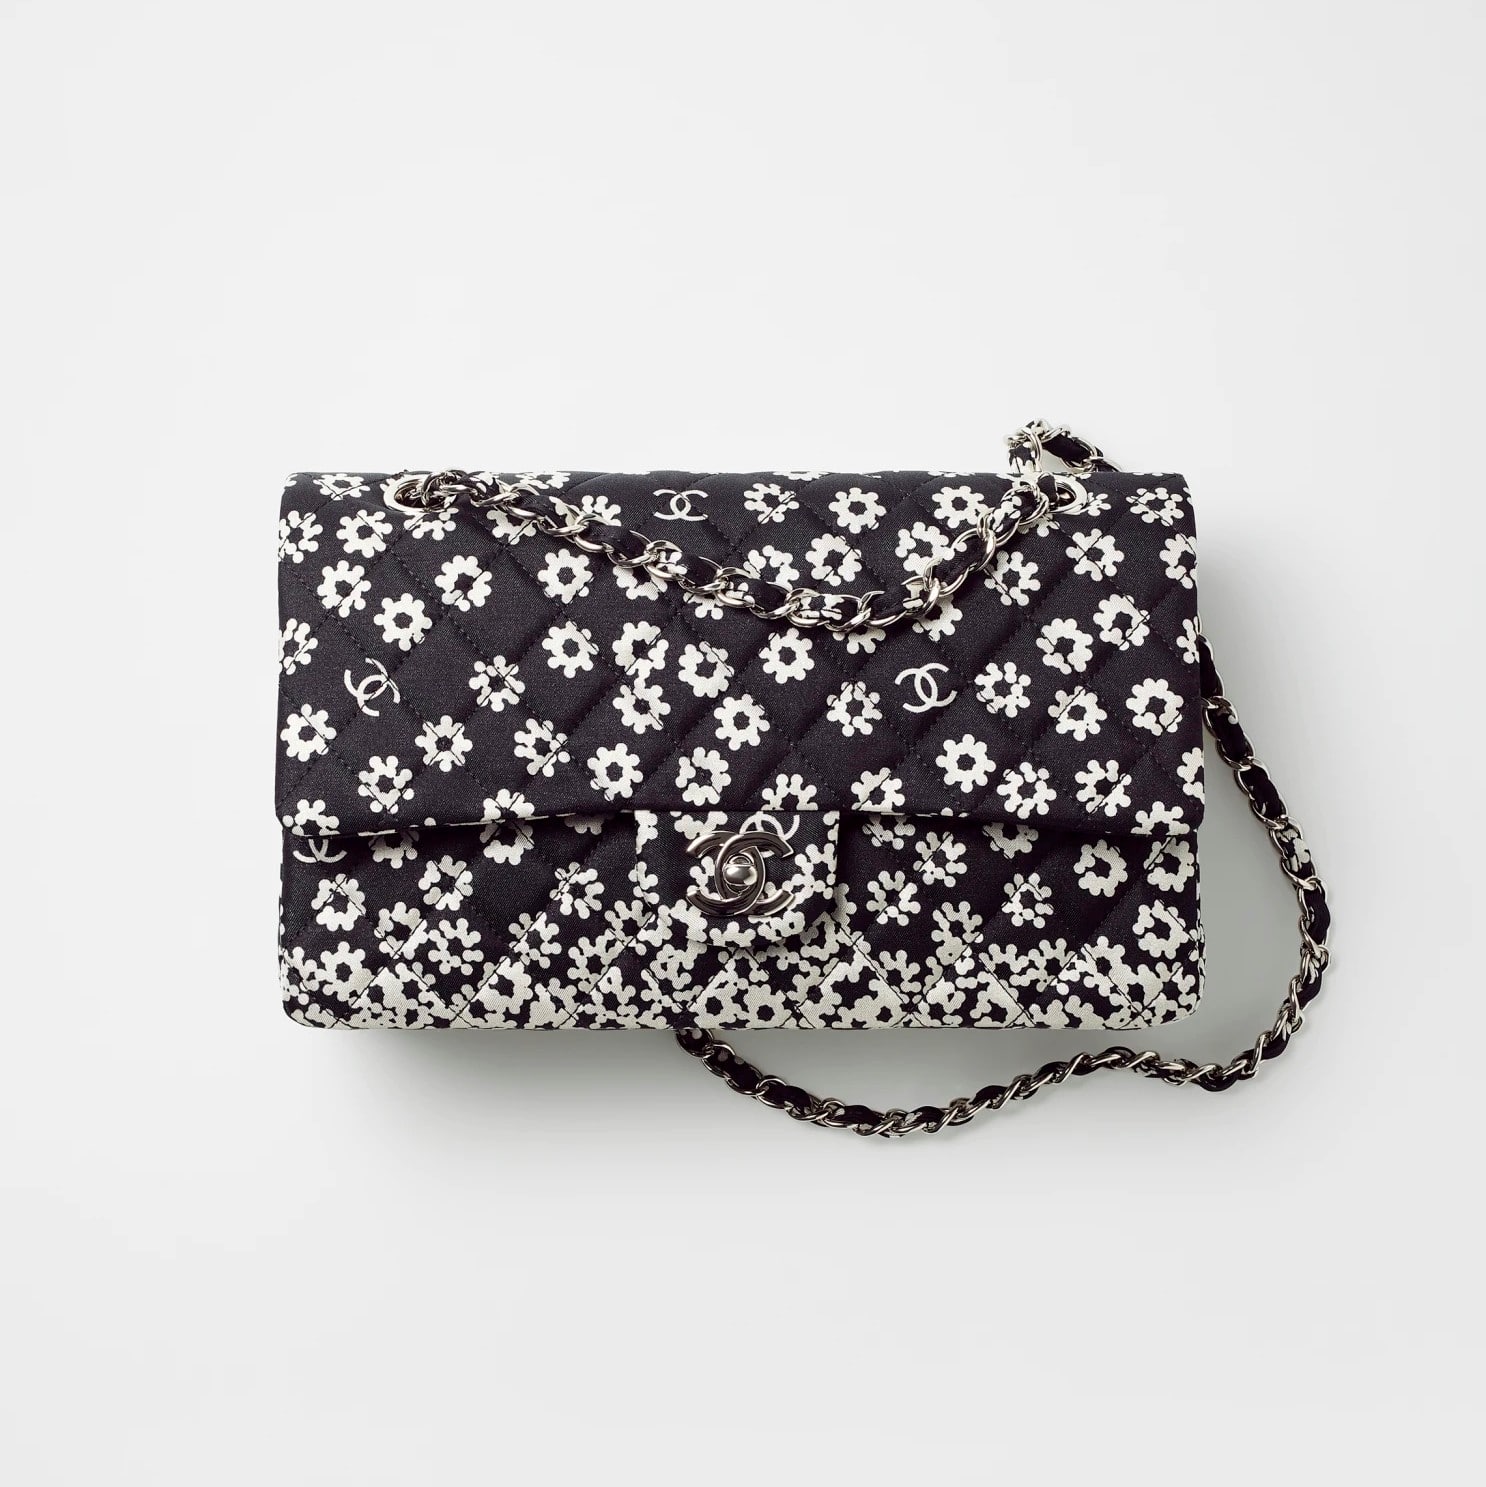 Chanel Printed Fabric Black & White Classic Handbag